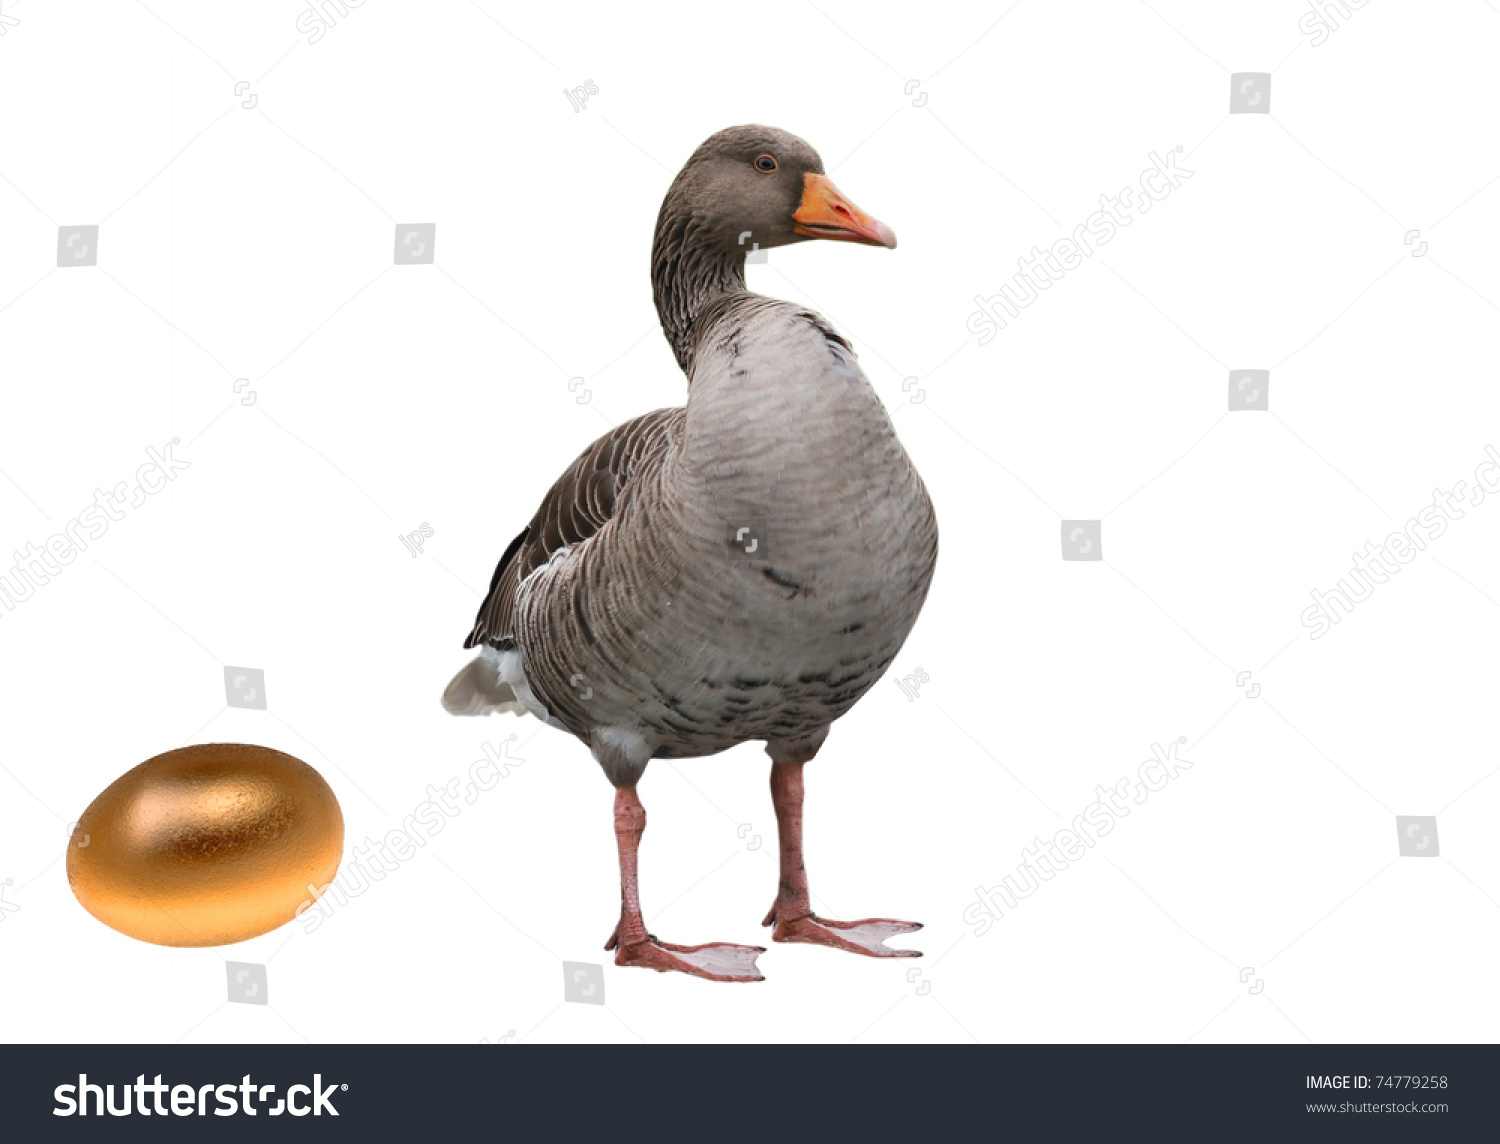 Goose Golden Egg Stock Photo 74779258 - Shutterstock